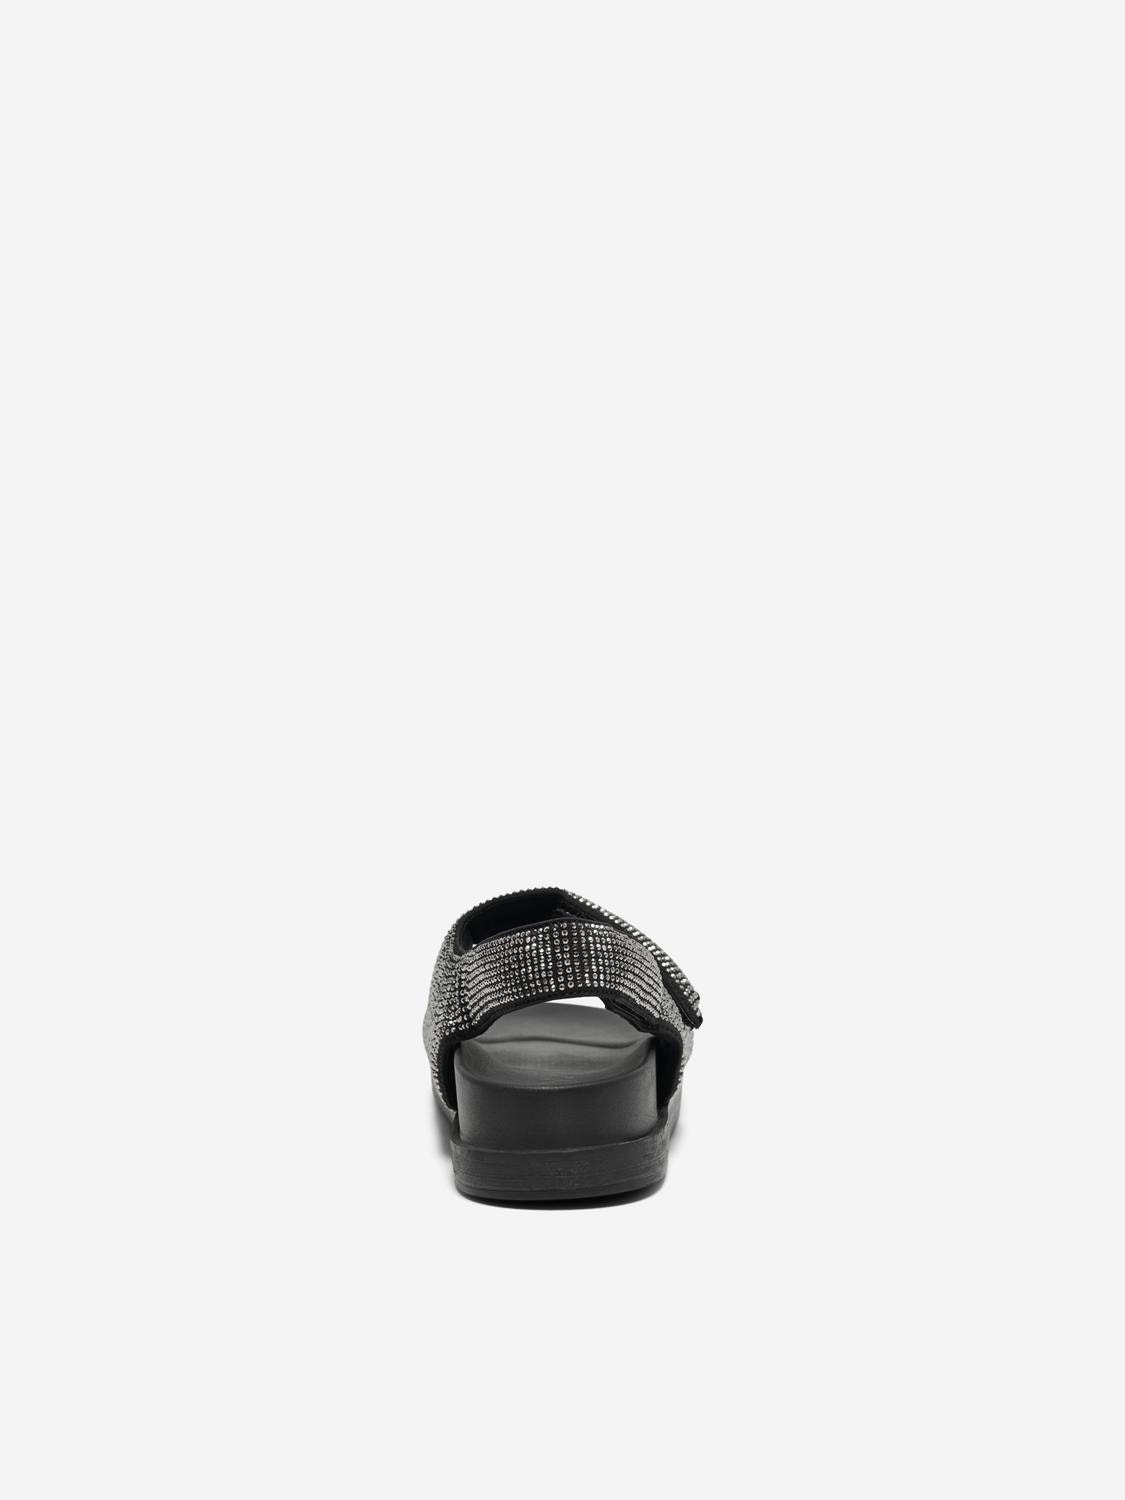 ONLY Open toe Adjustable strap Sandal -Black - 15319594